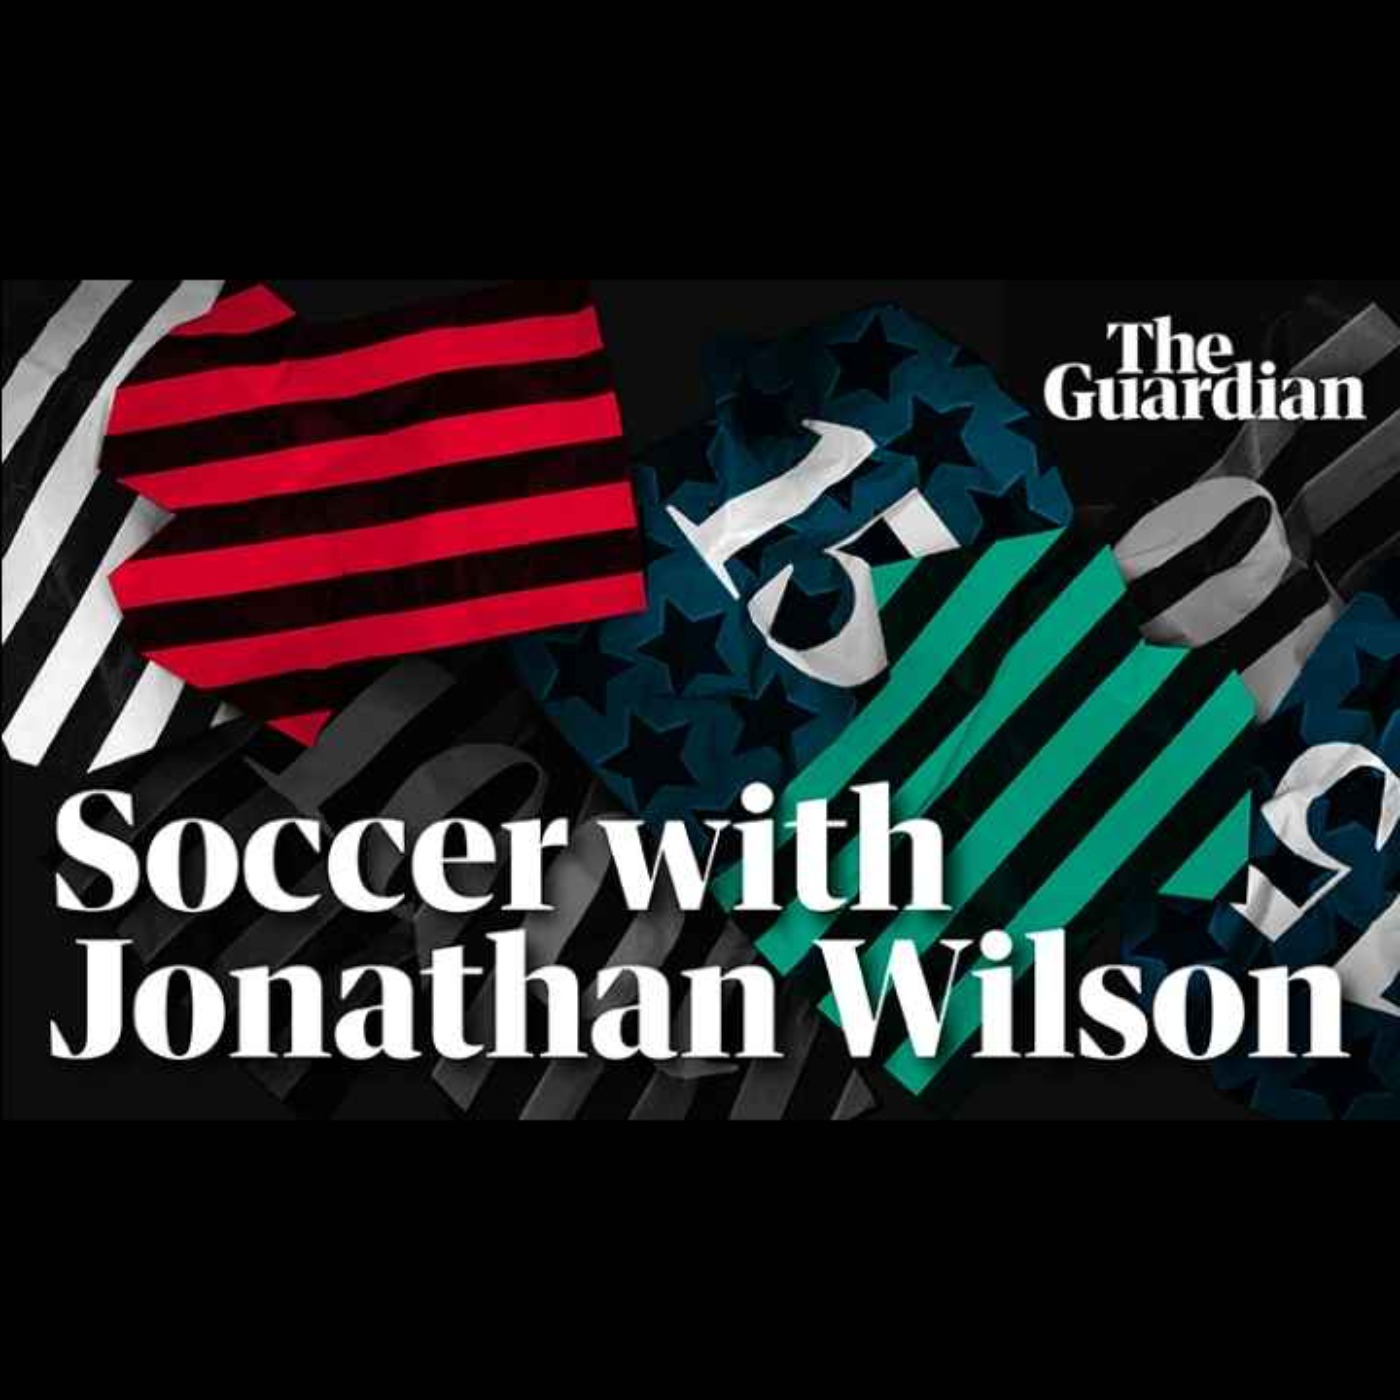 Jonathan Wilson interview about Bielsa, Klopp, Clough and USA